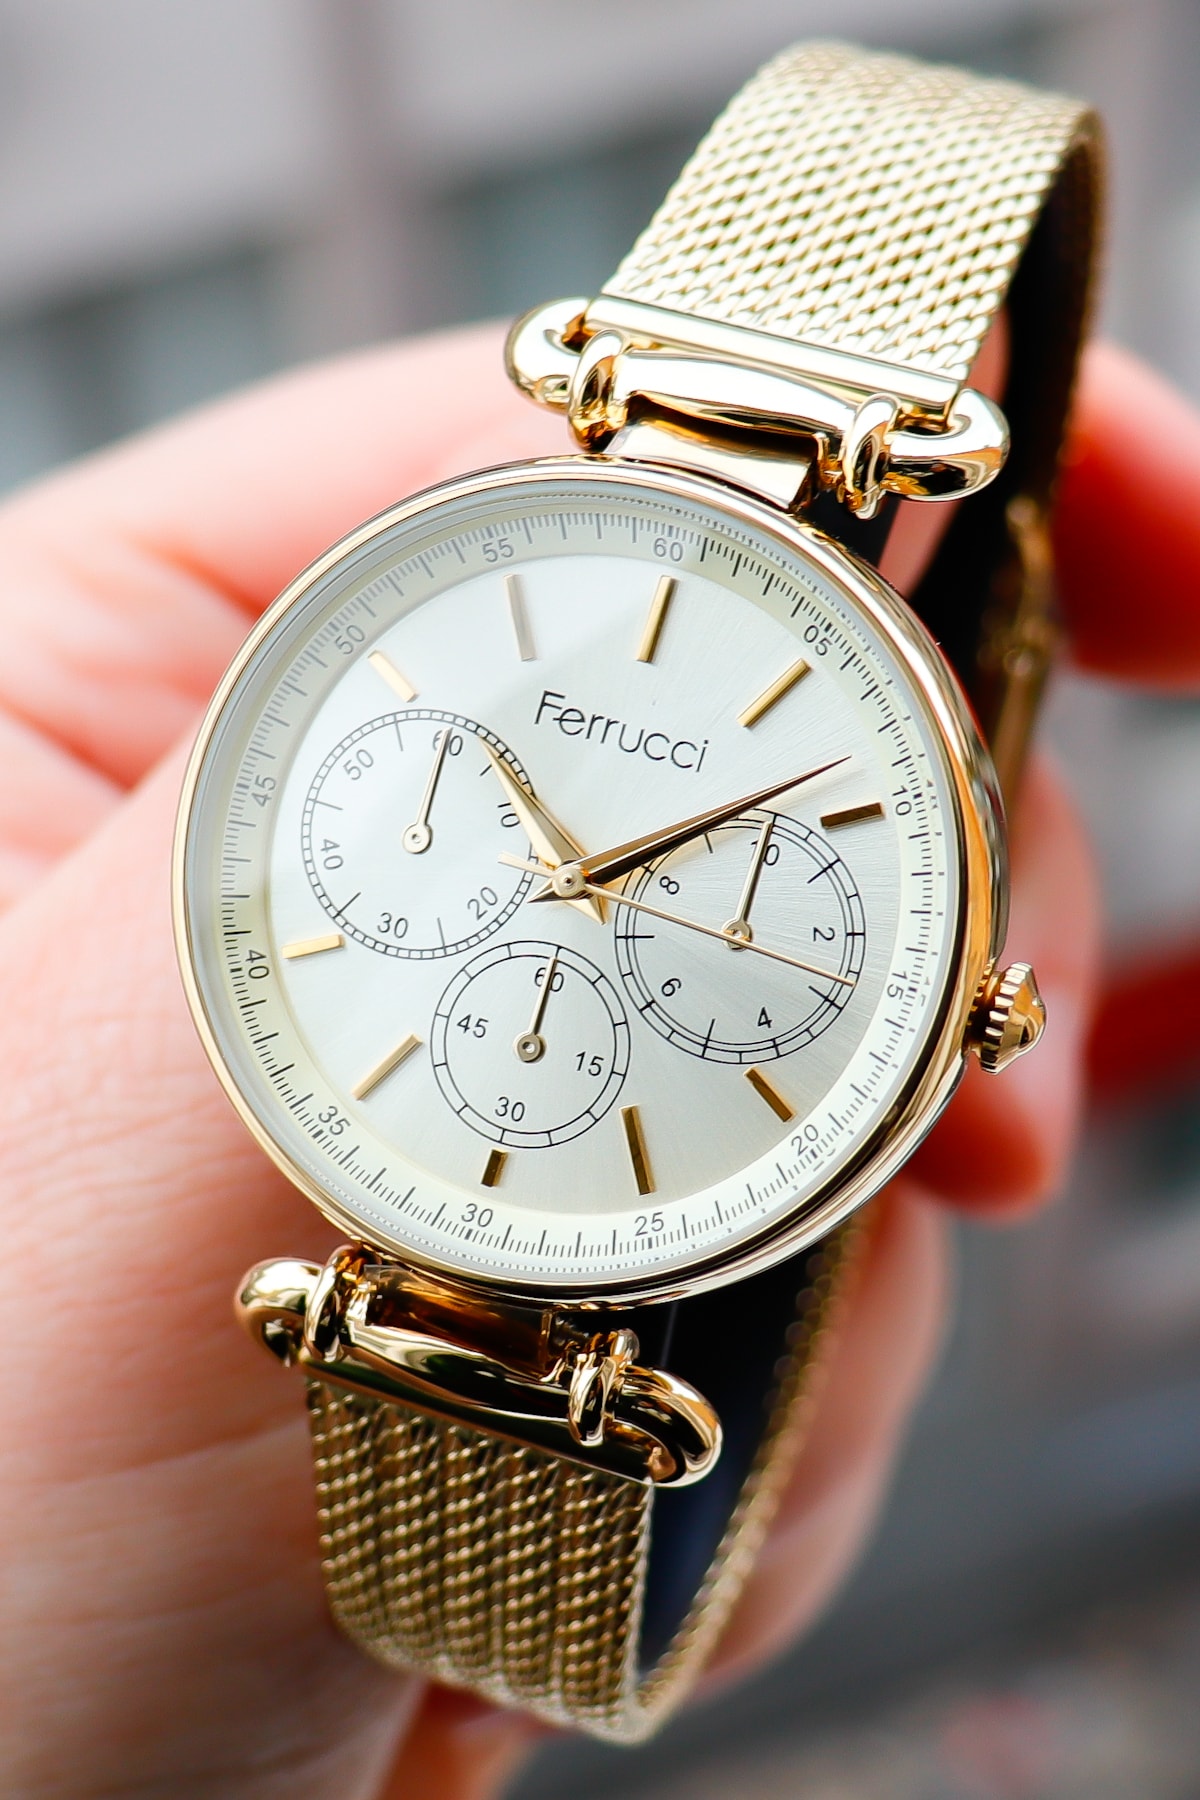 ساعت مچی زنانه فلز و نقره ای با رگه های طلایی رنگ فروچی Ferrucci (برند ترکیه)